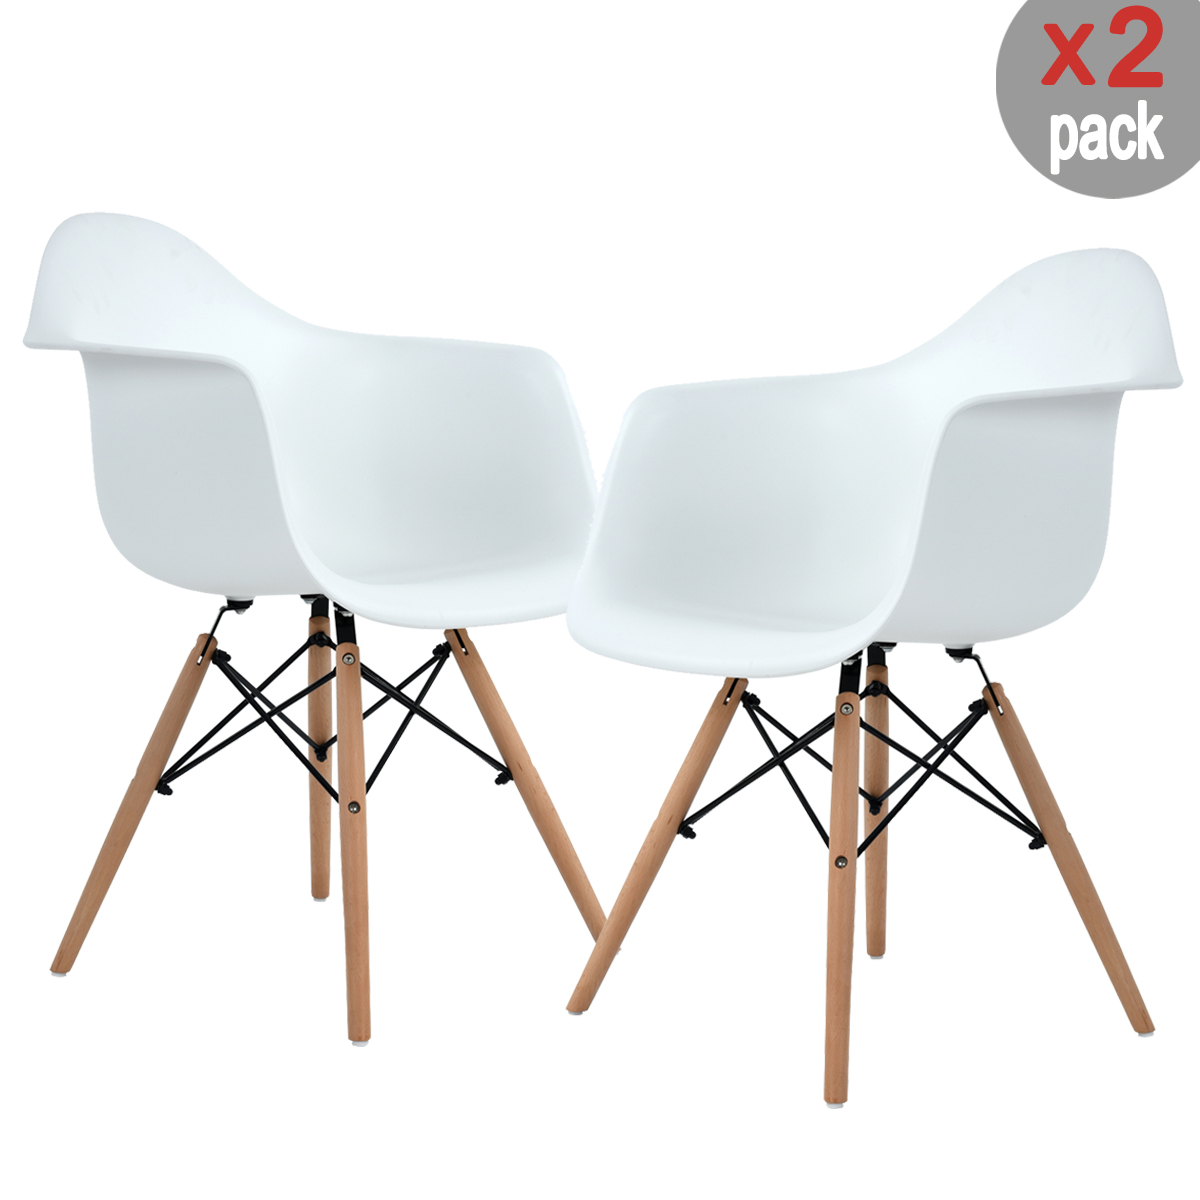 Set de 2 sillas Eames con Brazos Keiä Kohler-Blanco